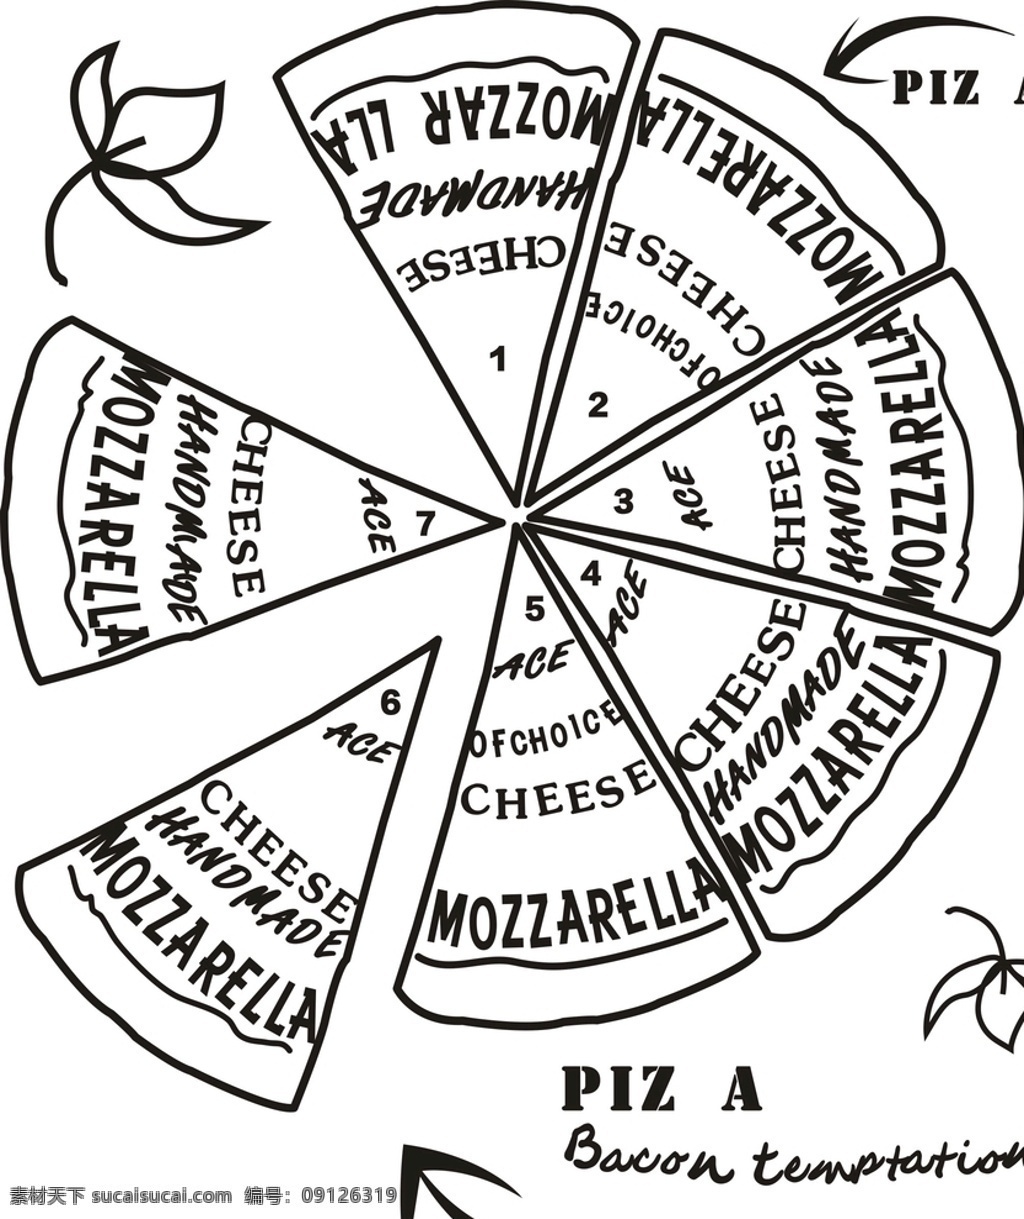 披萨 pizza 披萨矢量 披萨图案 意大利 意大利披萨 抠图 矢量